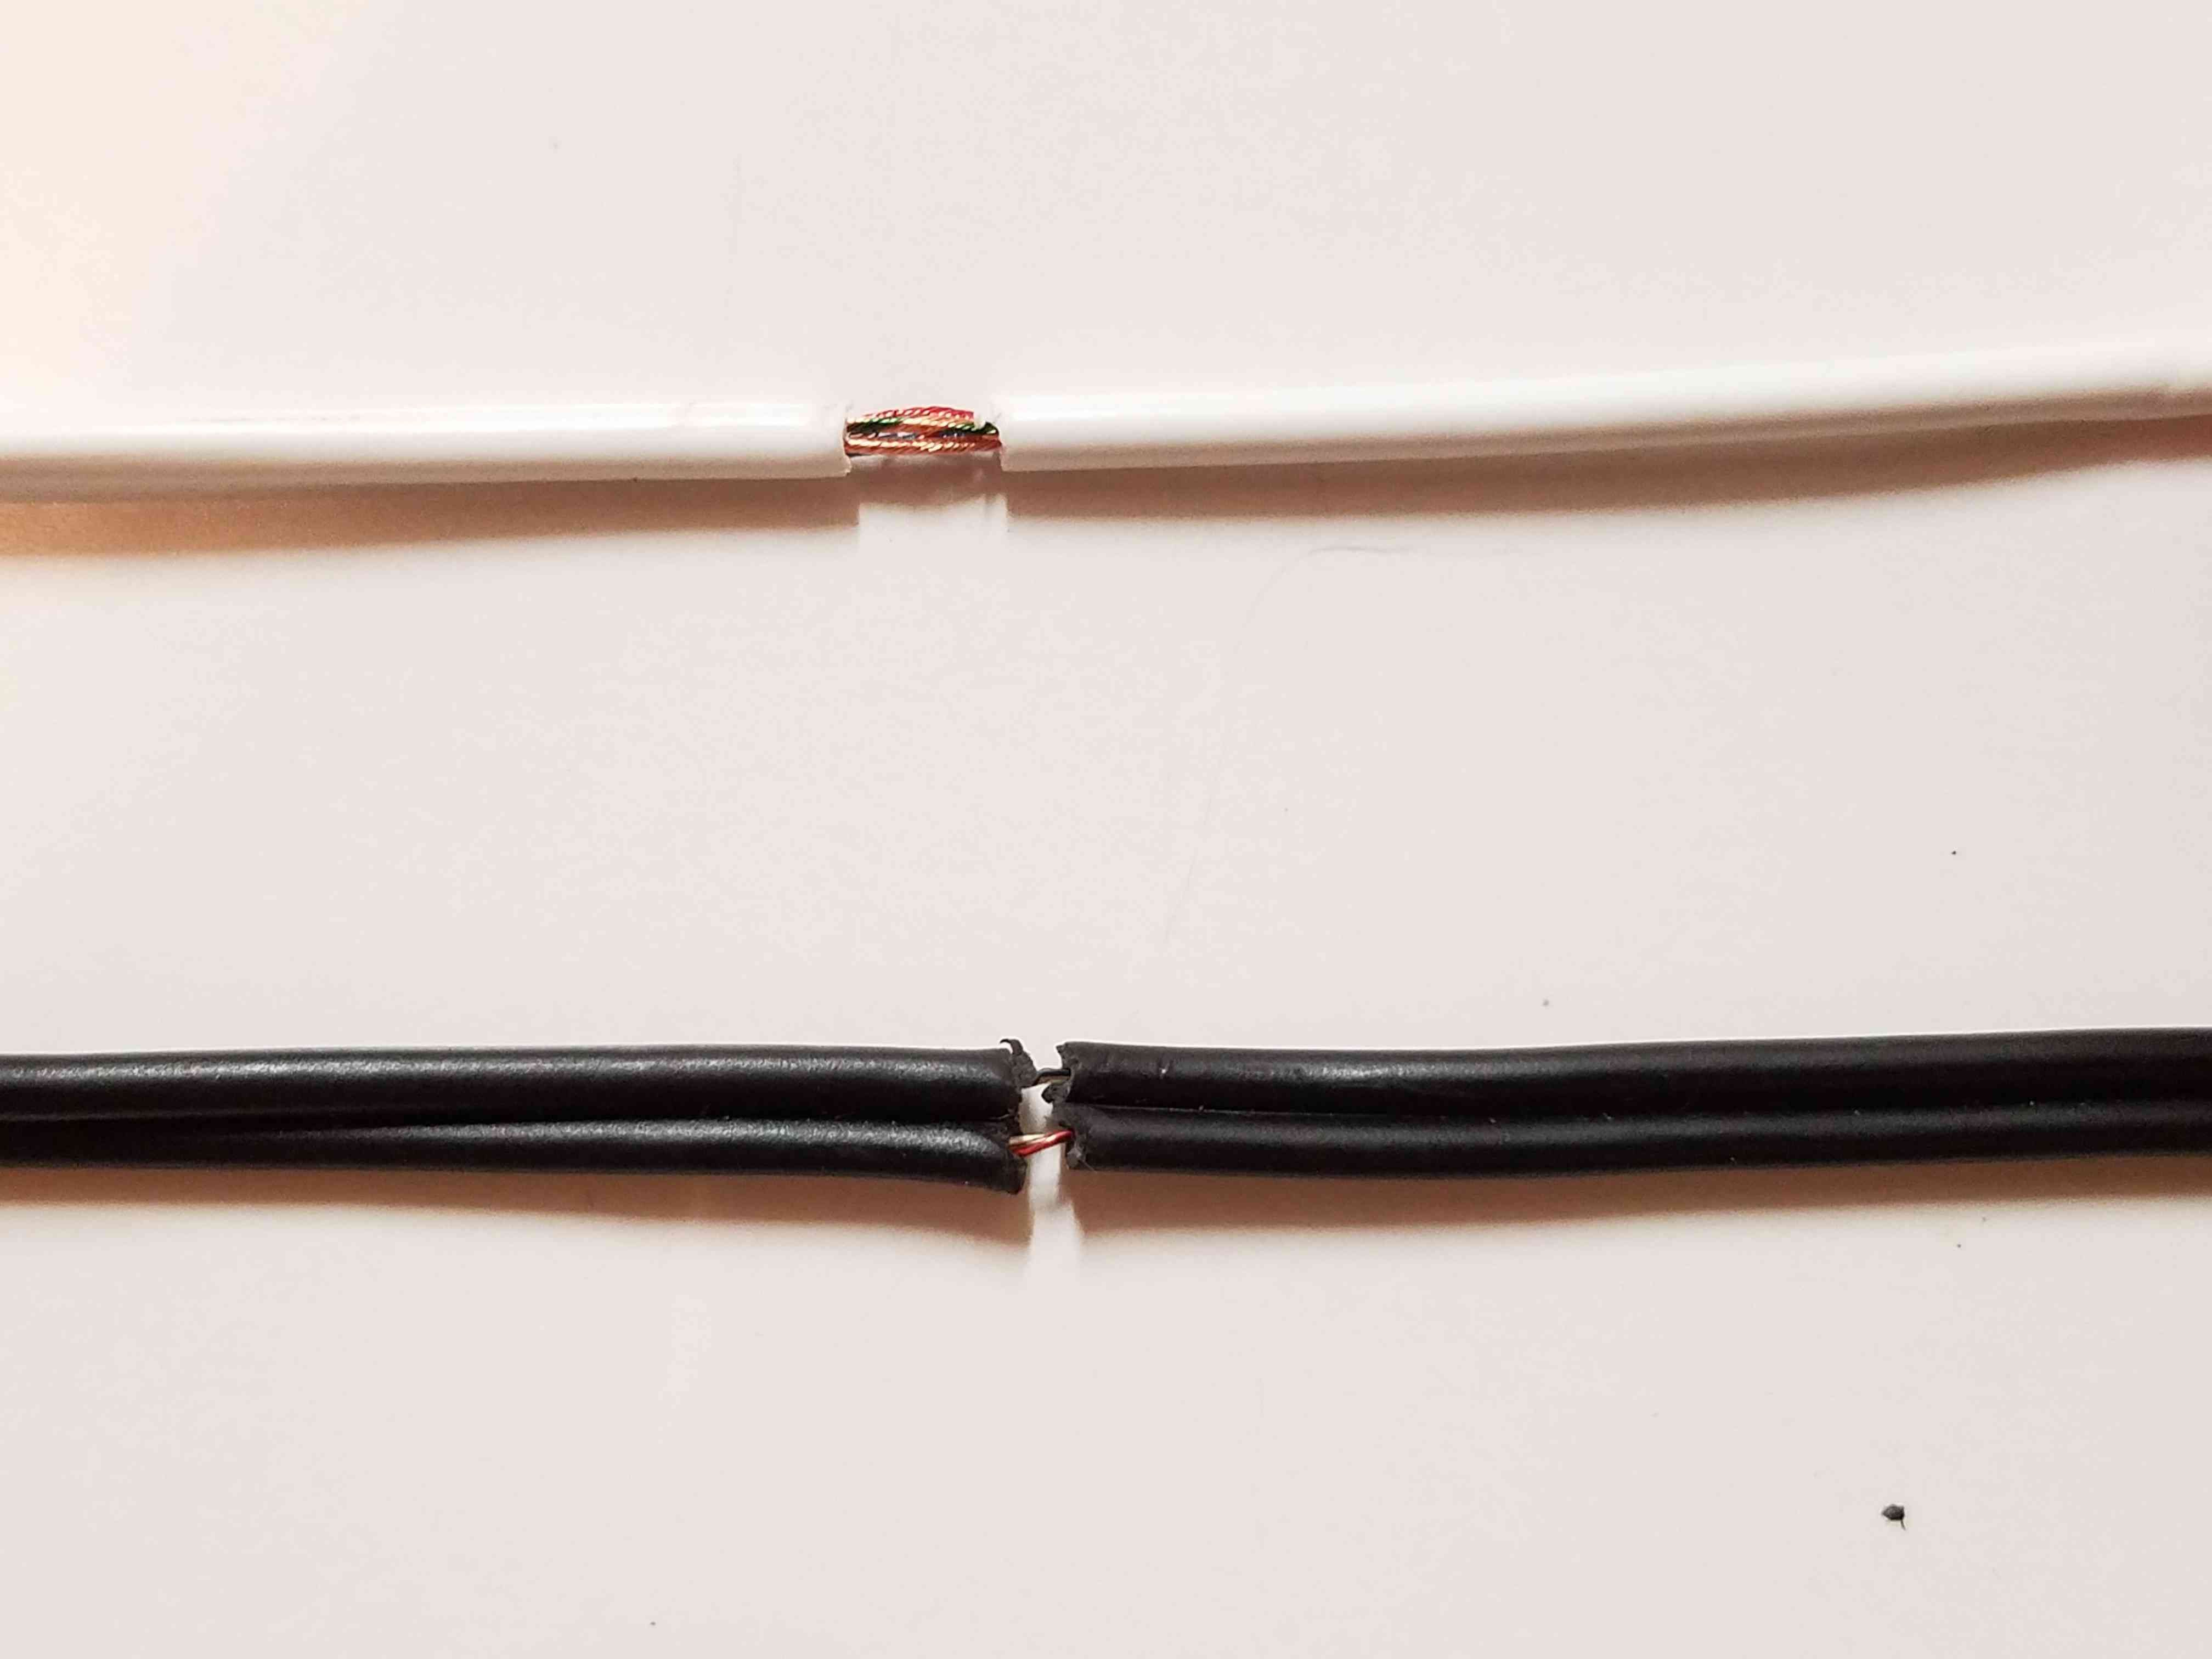 Осторожно зачистите окружающую изоляцию кабеля, используя инструменты для зачистки проводов или нож, чтобы обнажить оборванный провод.